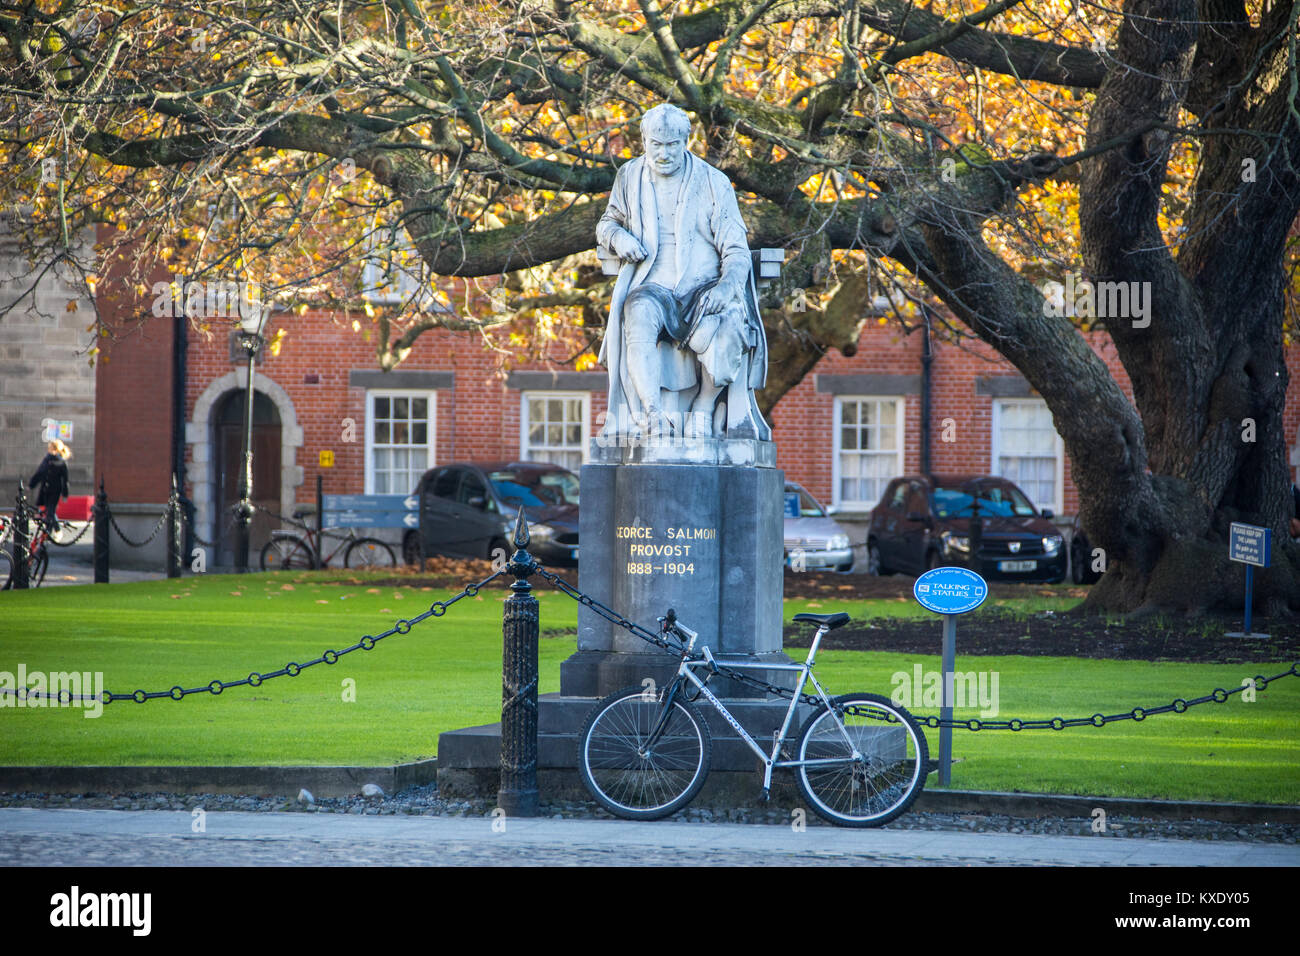 Statua di George salmone, Provost 1888-1904, Trinity College Dublin Foto Stock